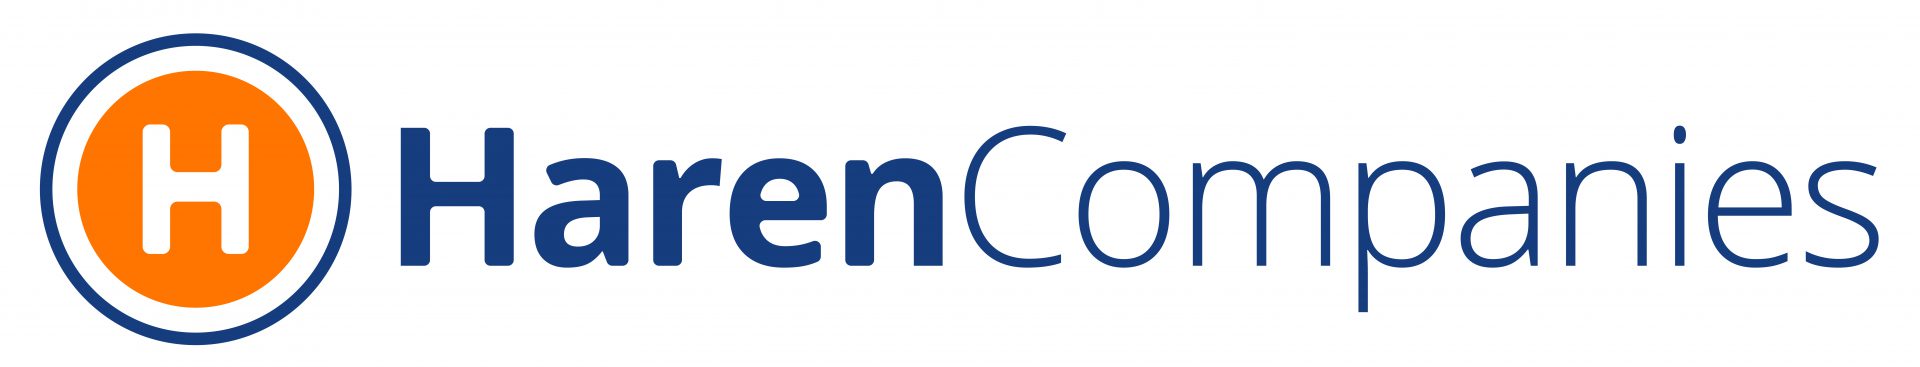 Haren Companies logo